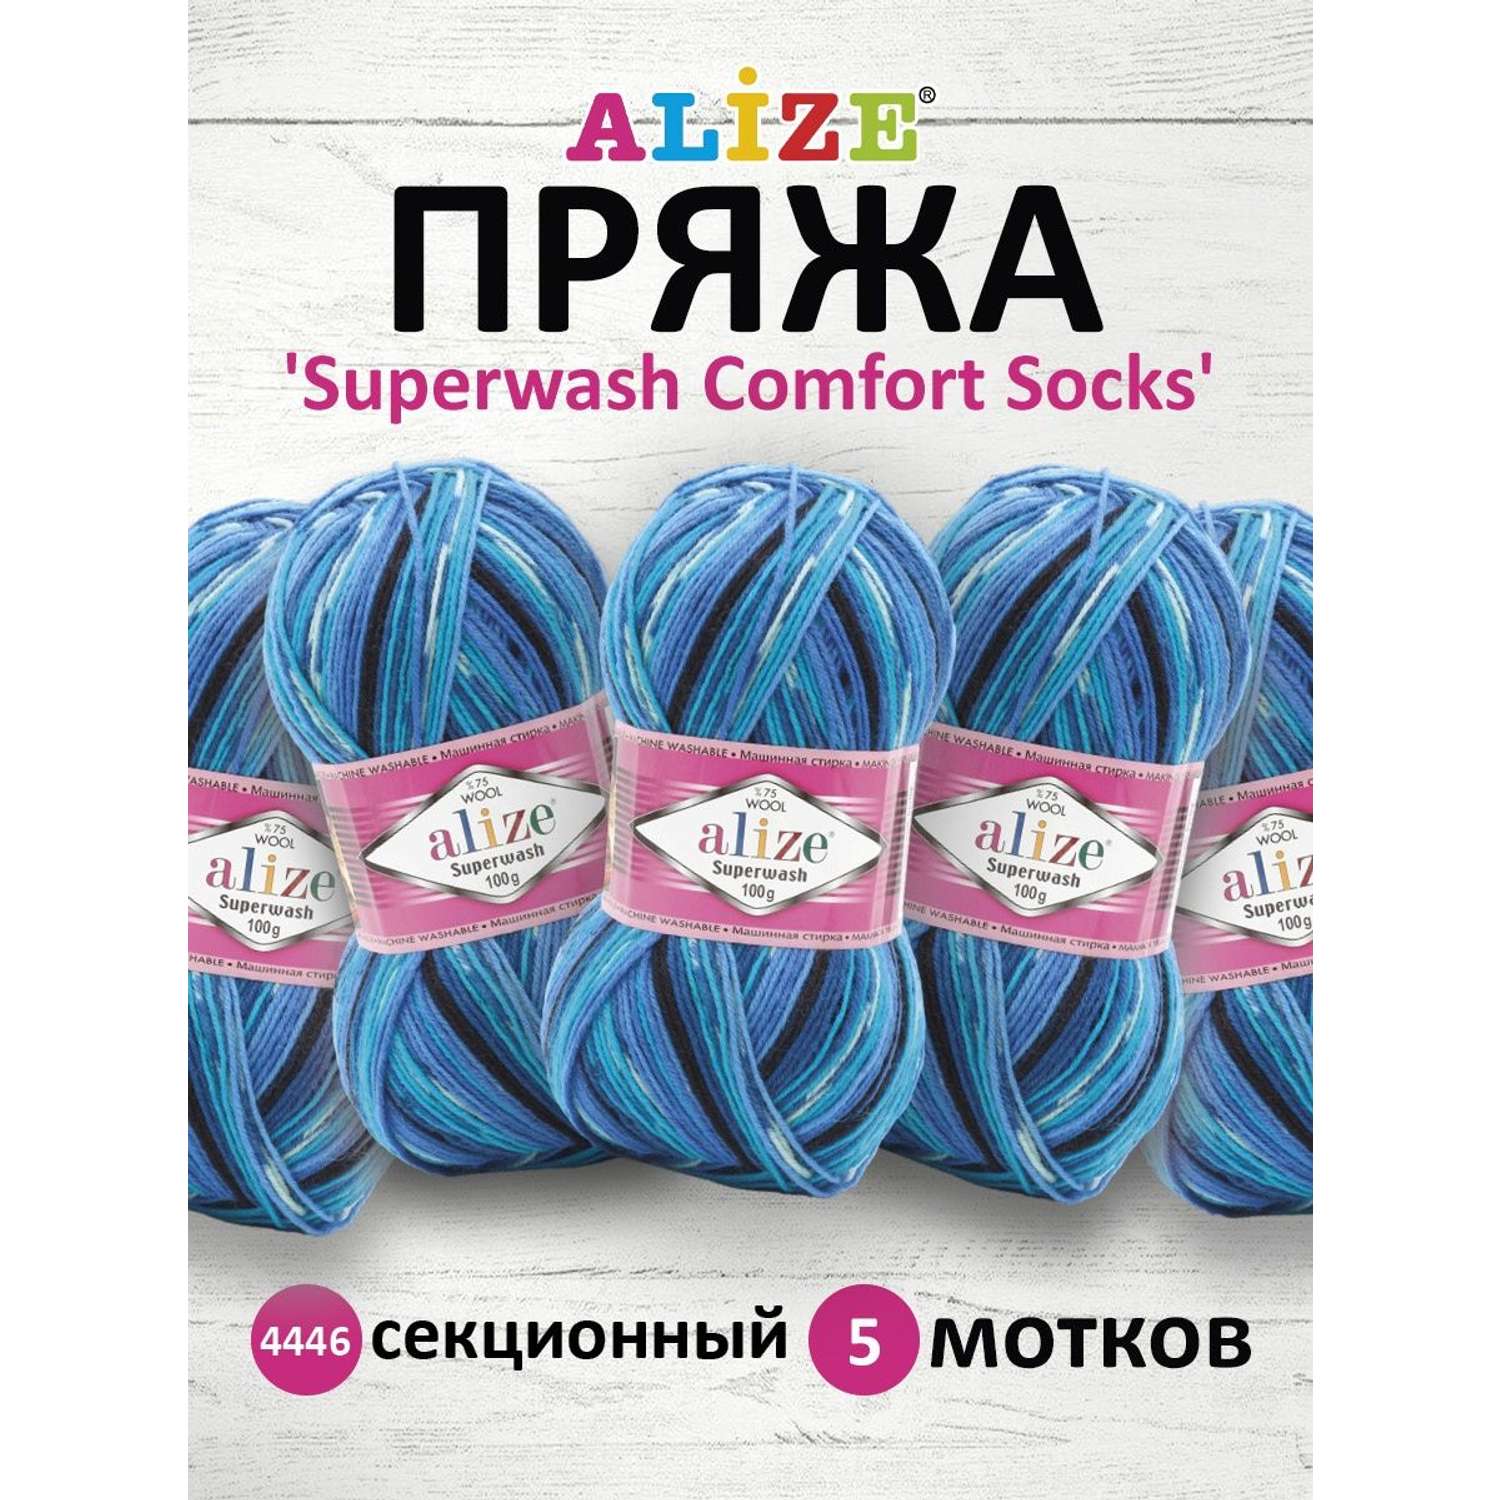 Пряжа Alize теплая для вязания носков Superwash Comfort Socks 100 гр 420 м 5 мотков 4446 секционный - фото 1